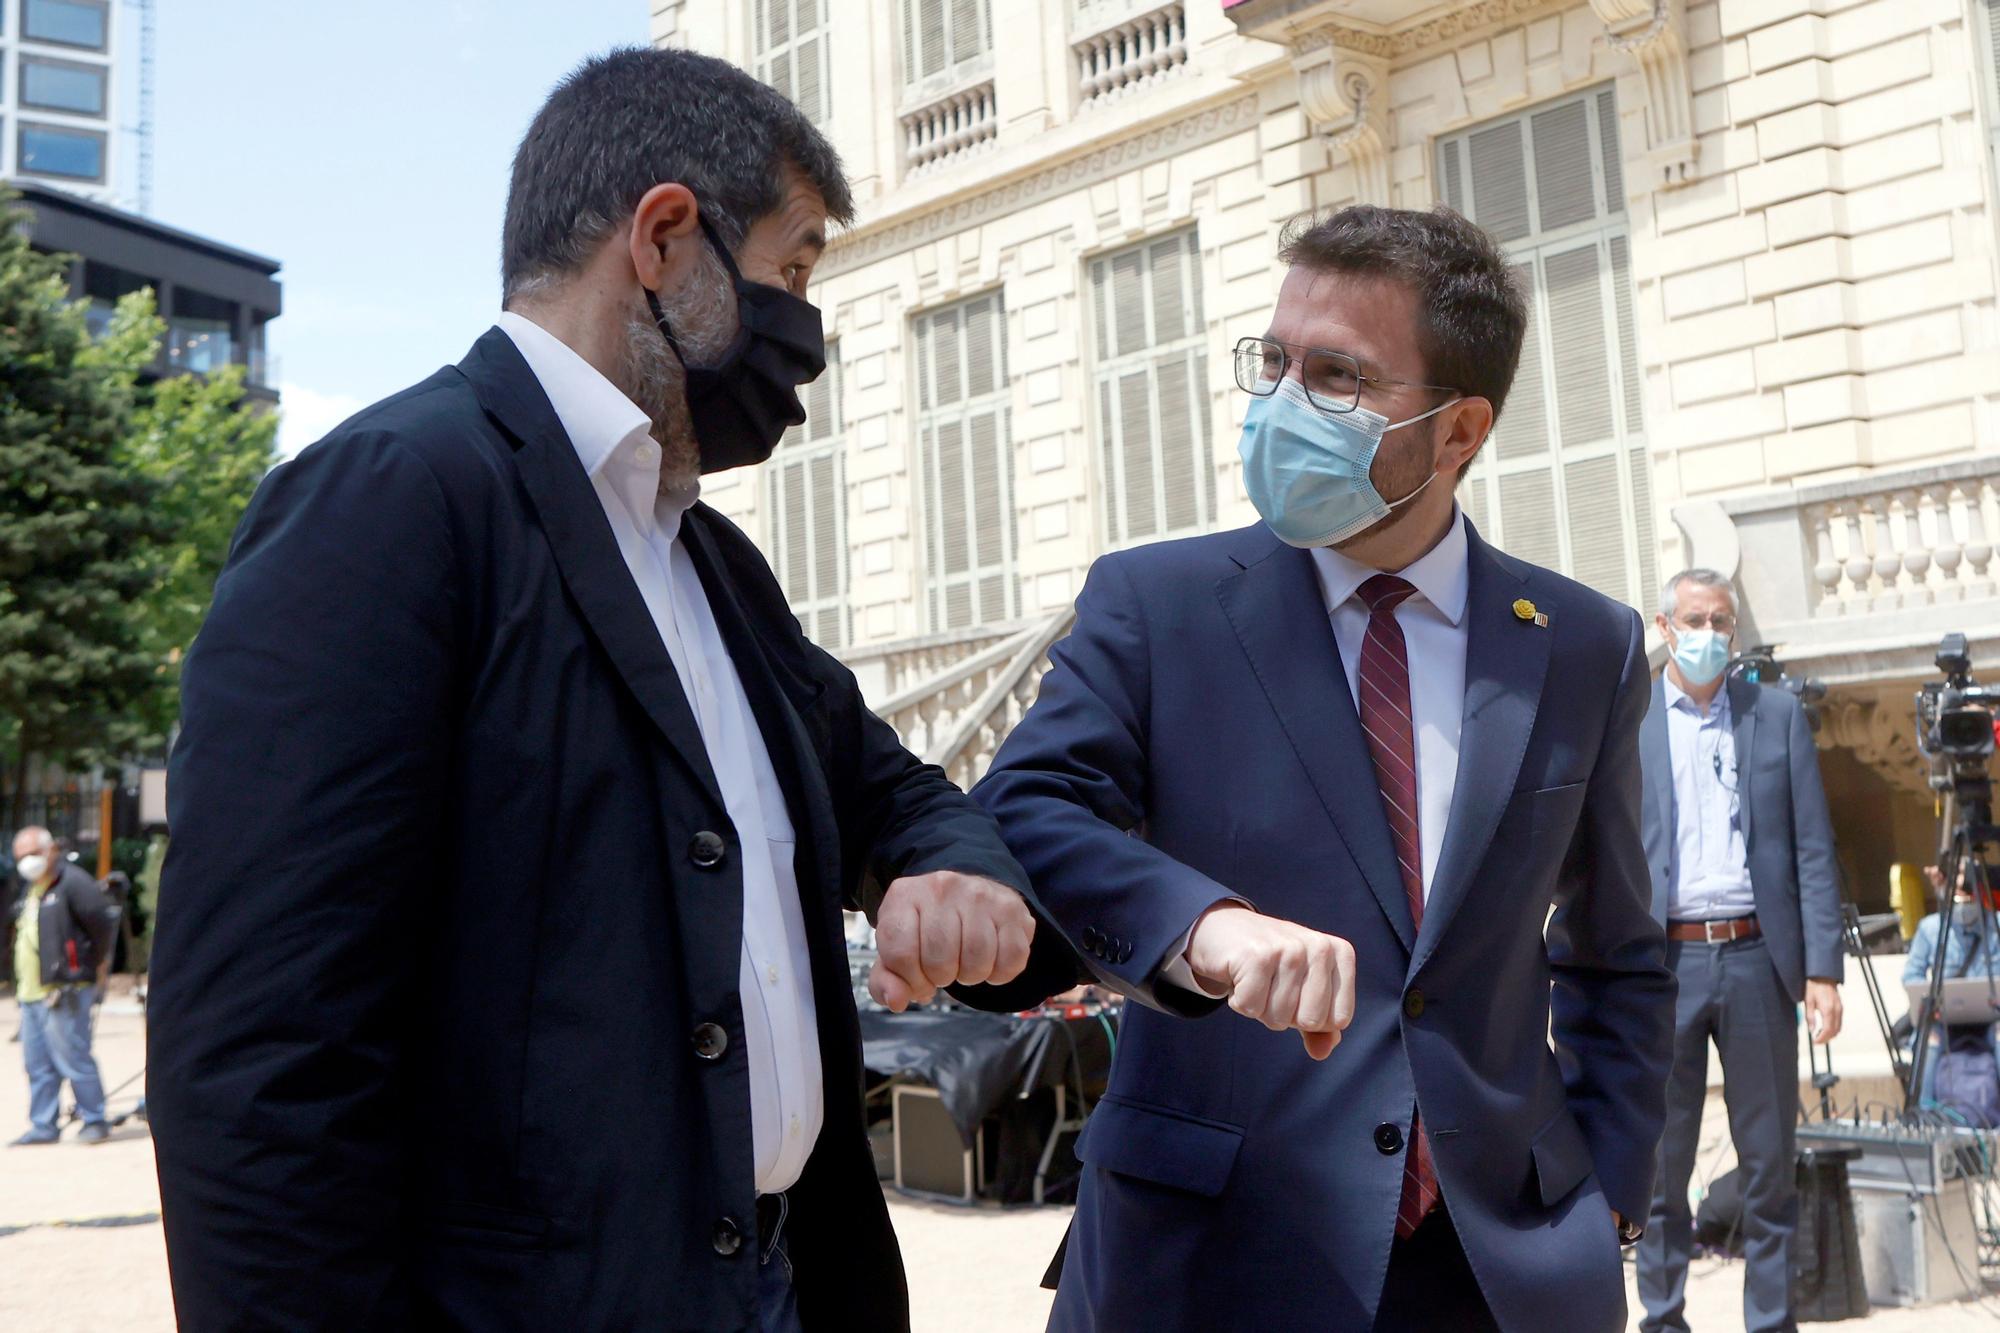 Jordi Sànchez y Pere Aragonès, tras hacer público el acuerdo de coalición entre ERC y Junts per Catalunya